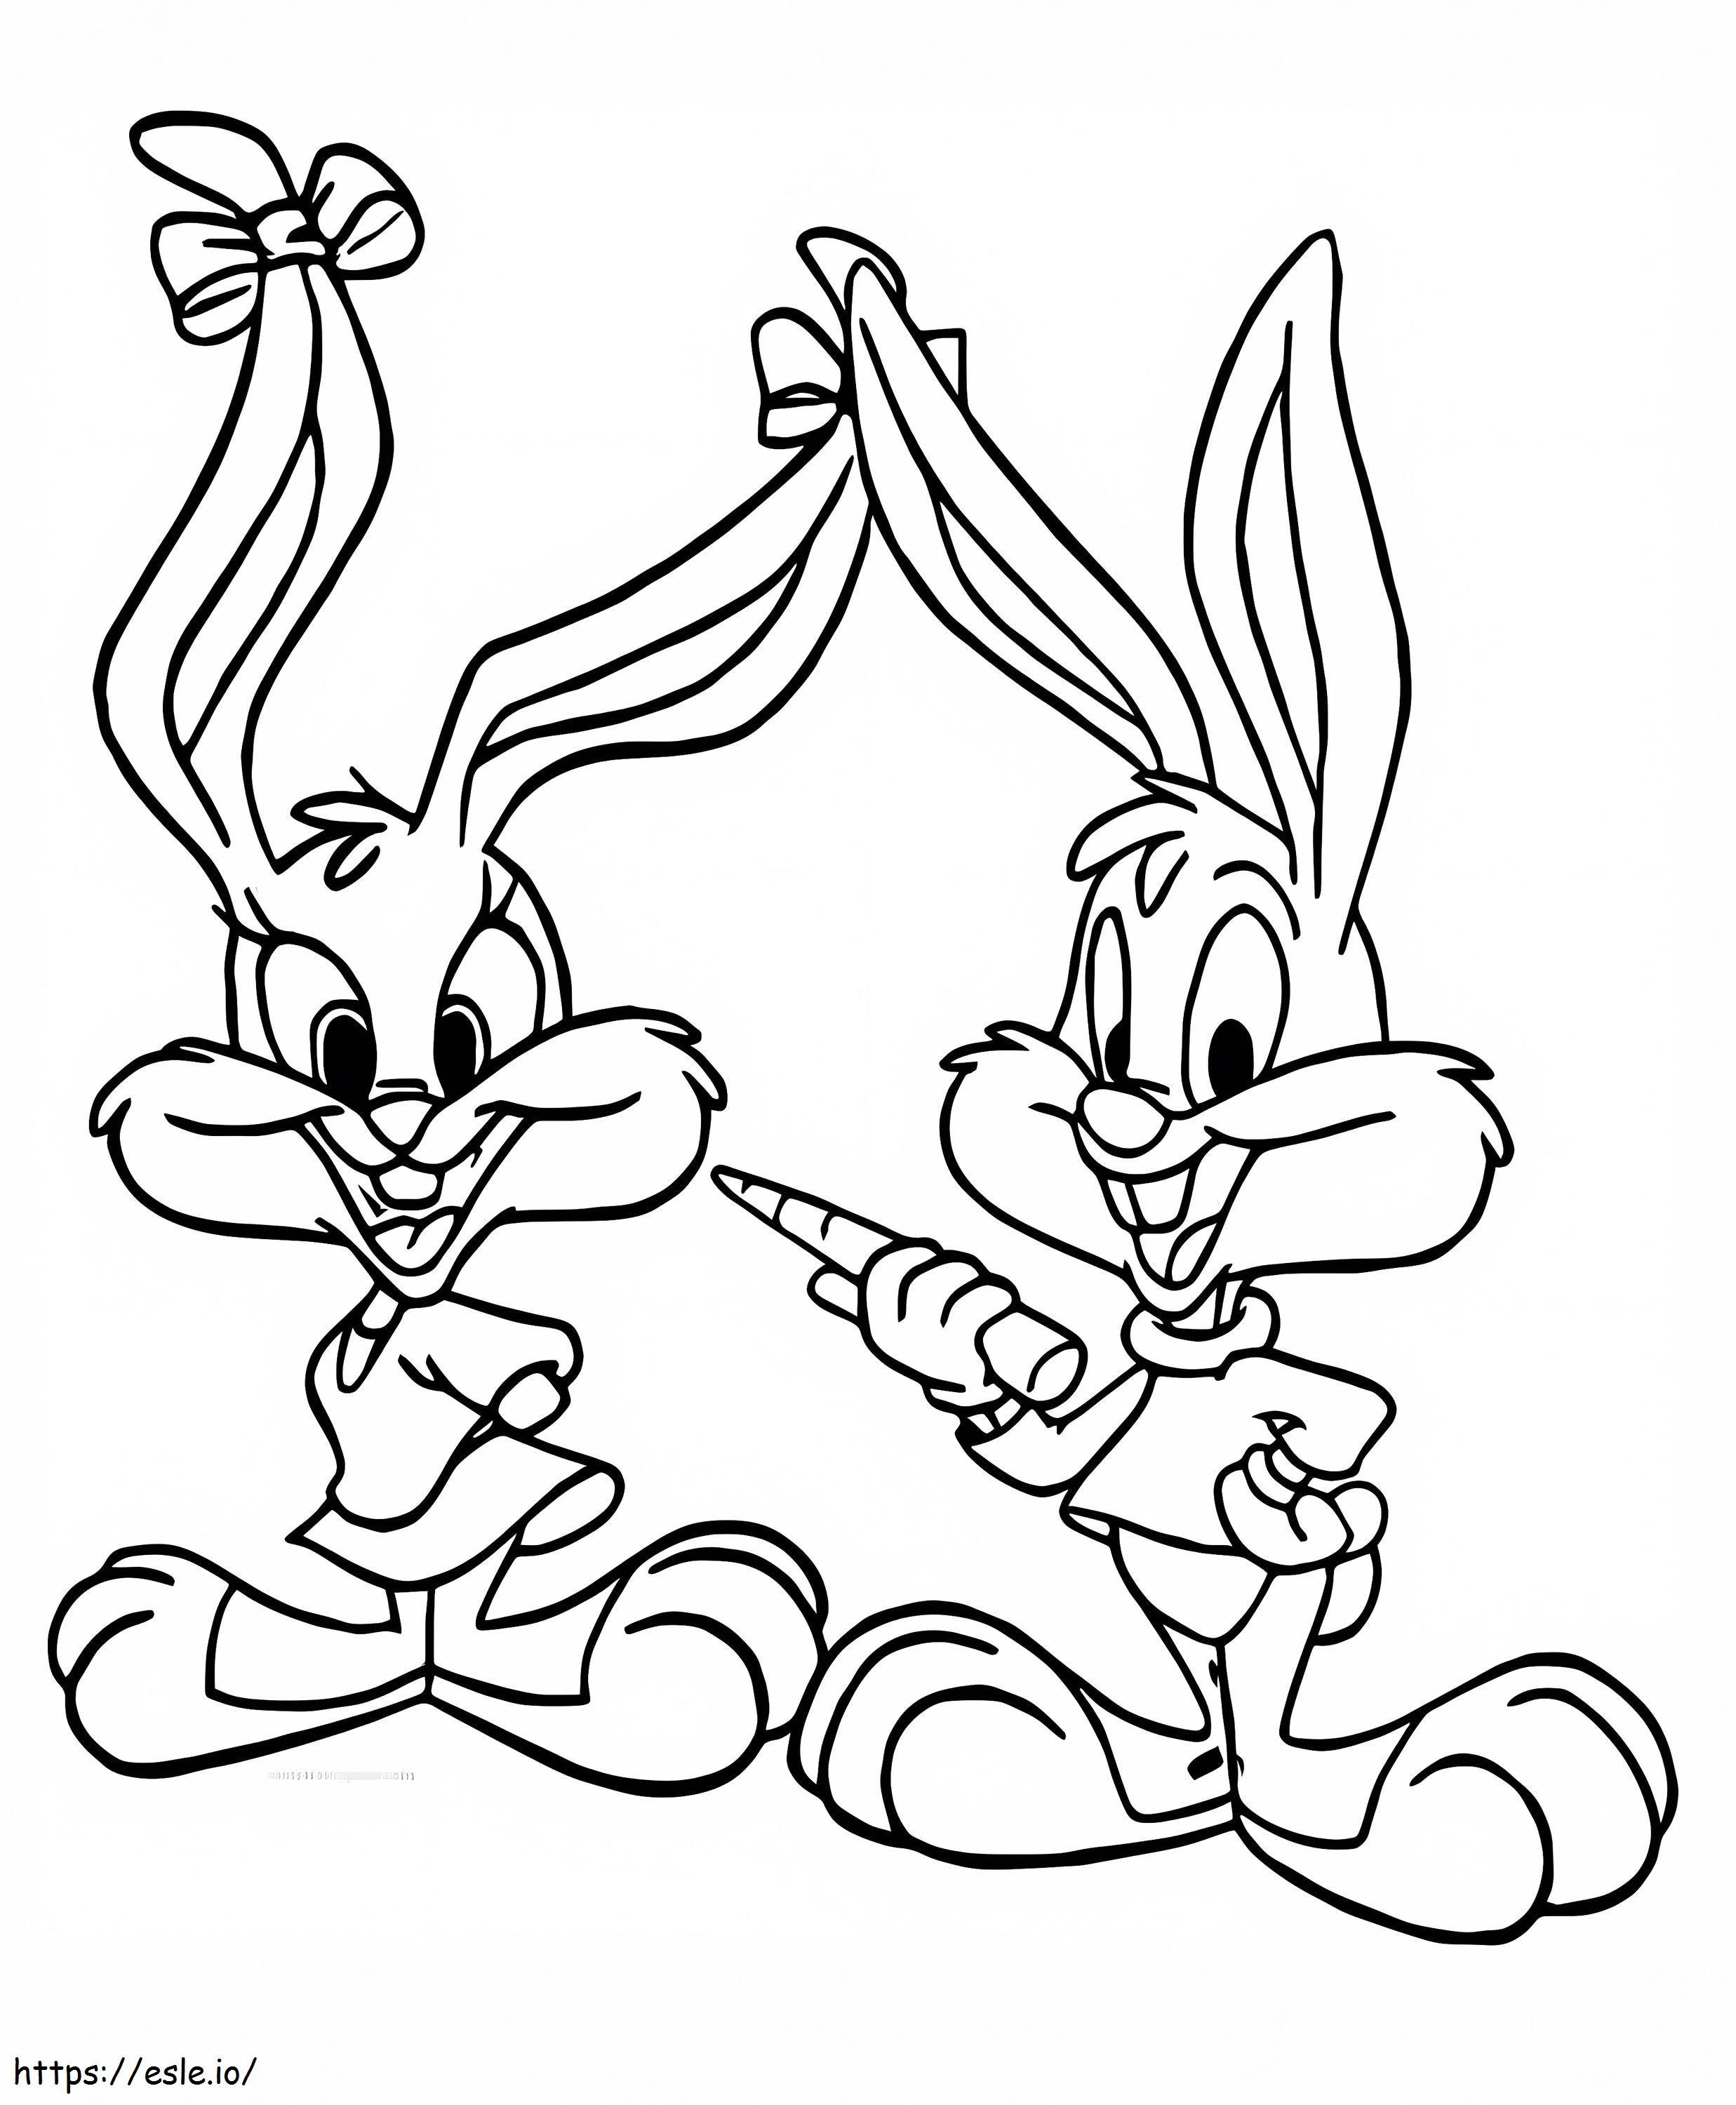 Babs Bunny și Buster Bunny de colorat